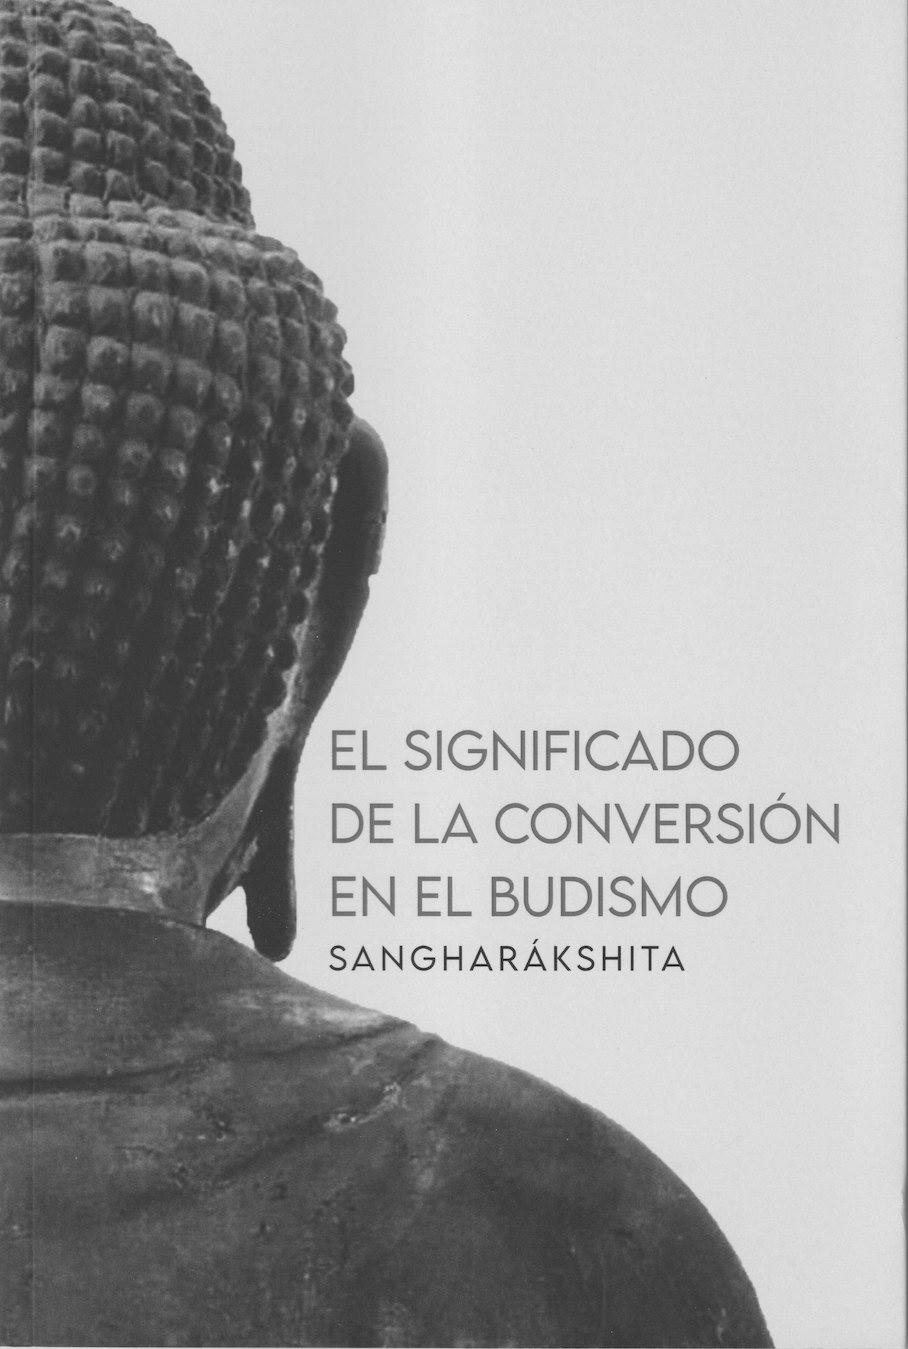 El significaco de la conversión en el budismo